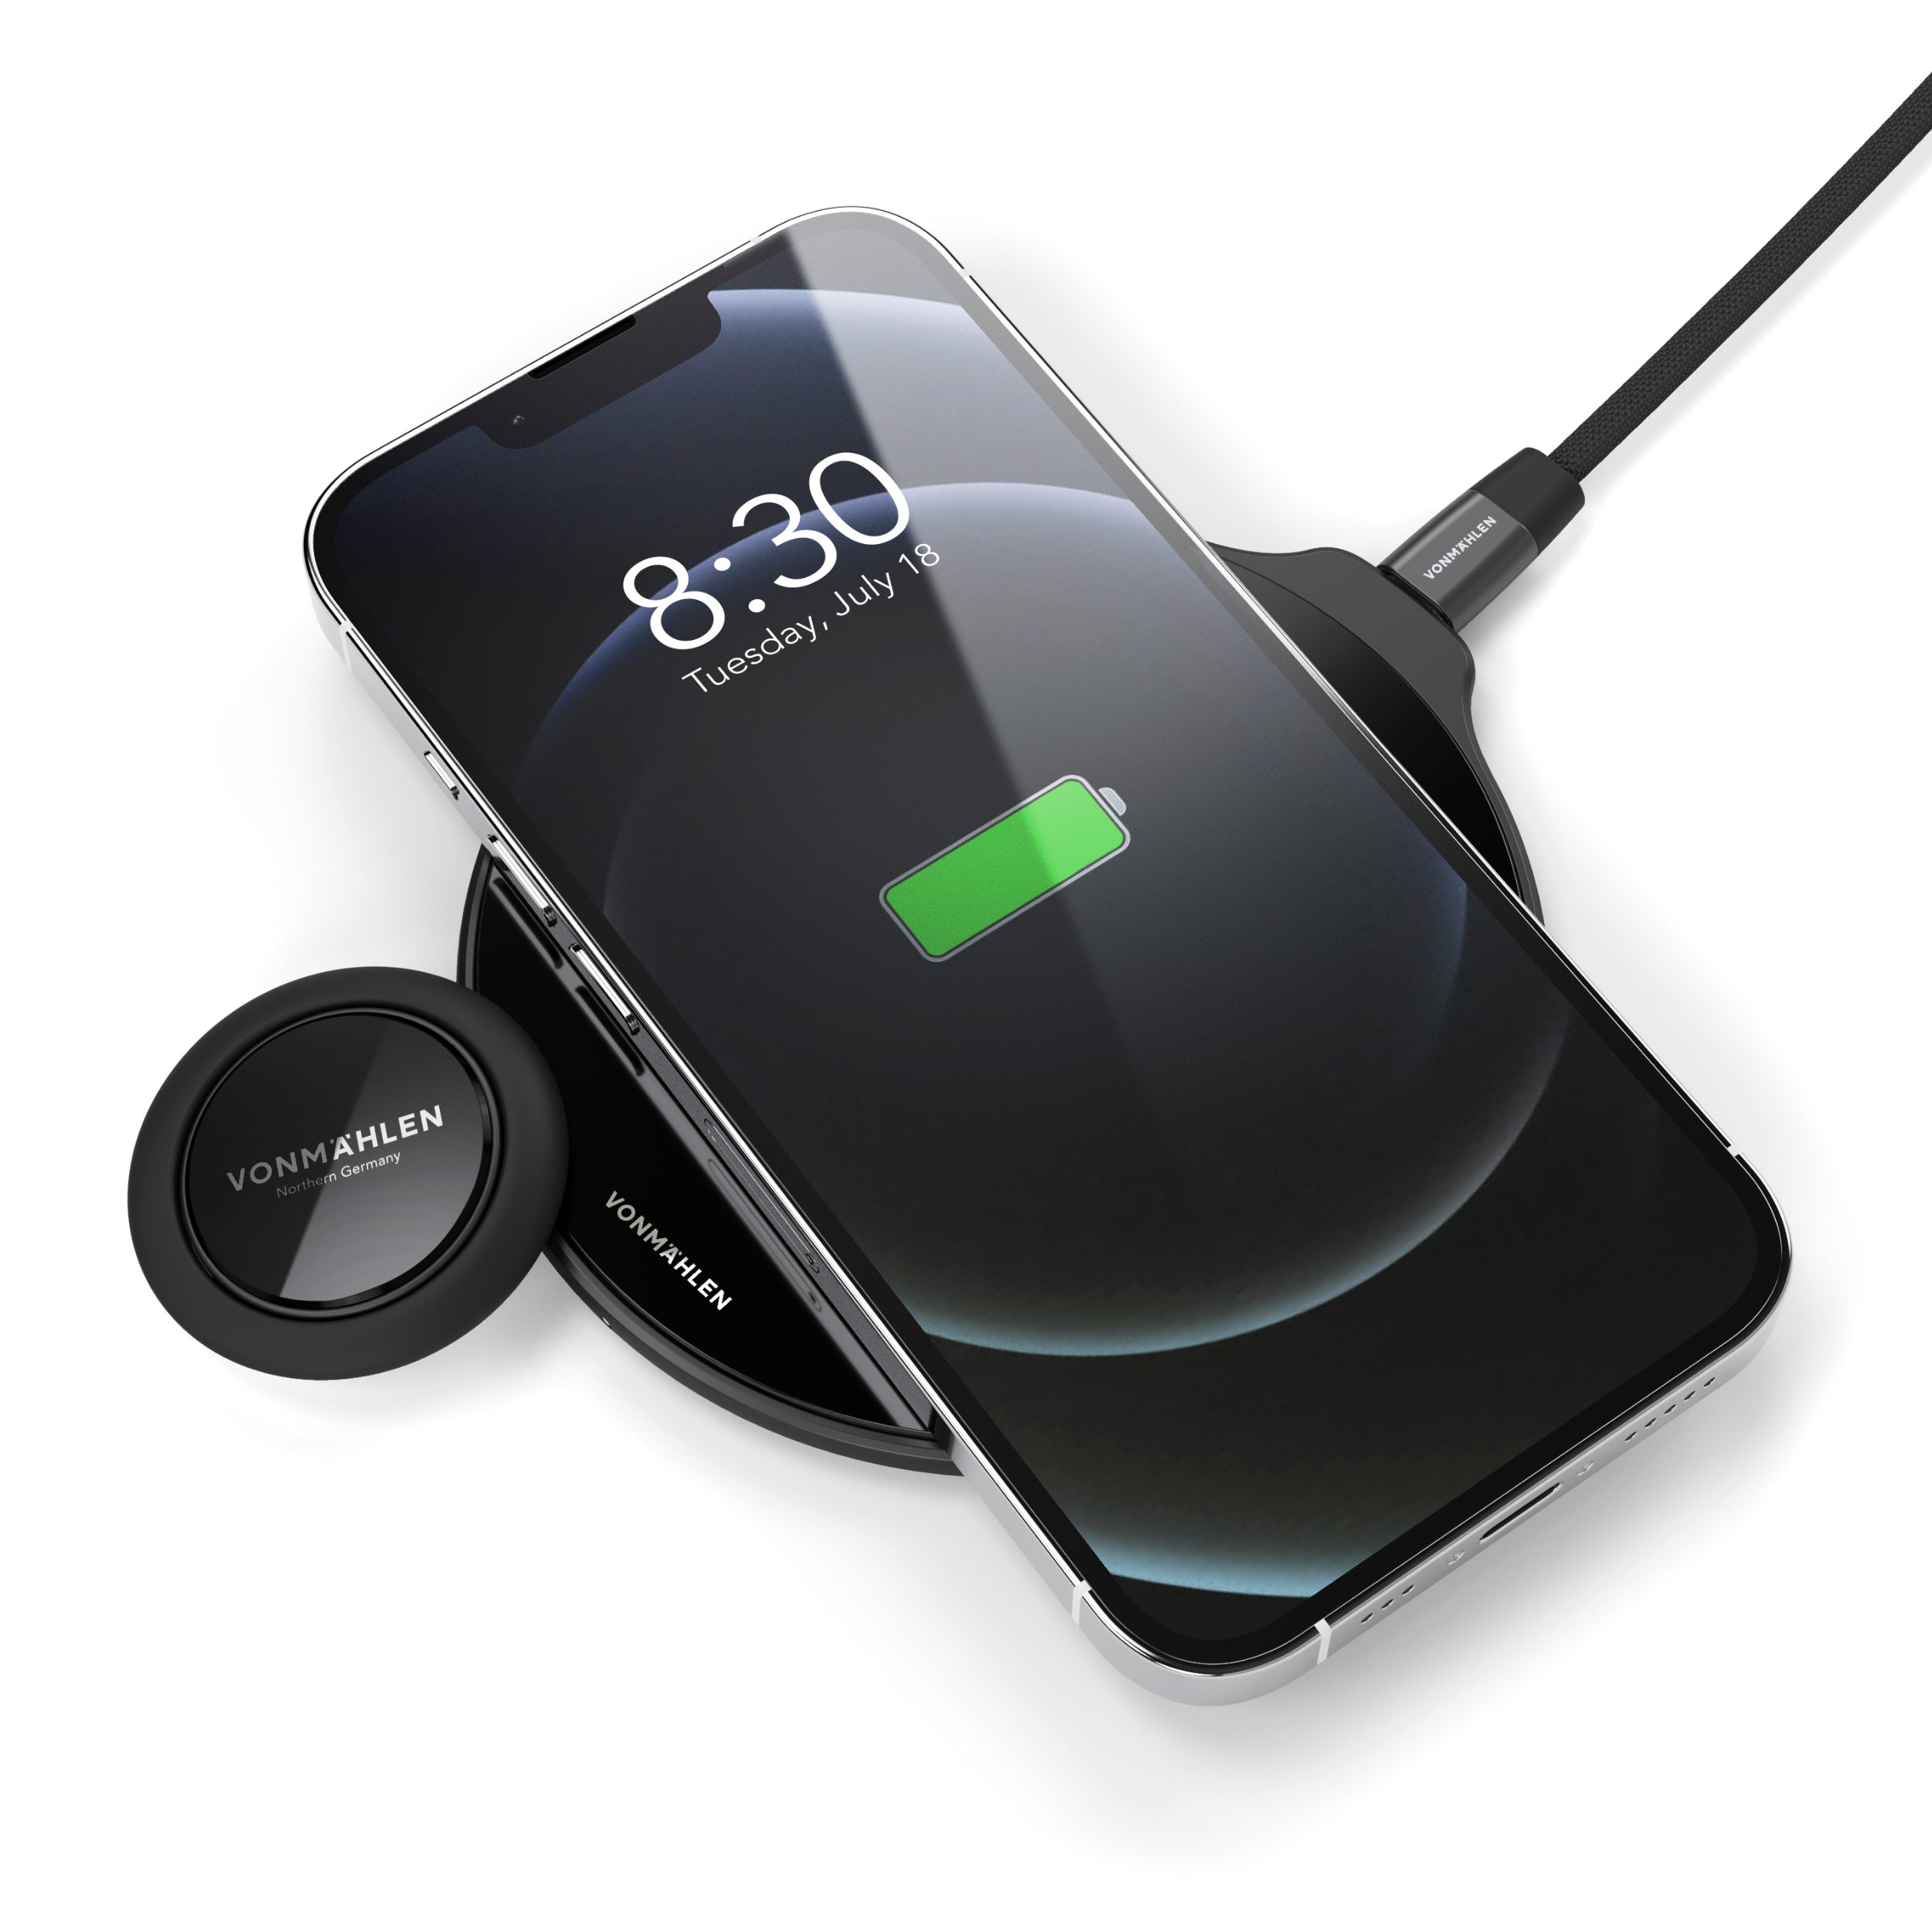 Vonmählen - Backflip Pure Phone Grip